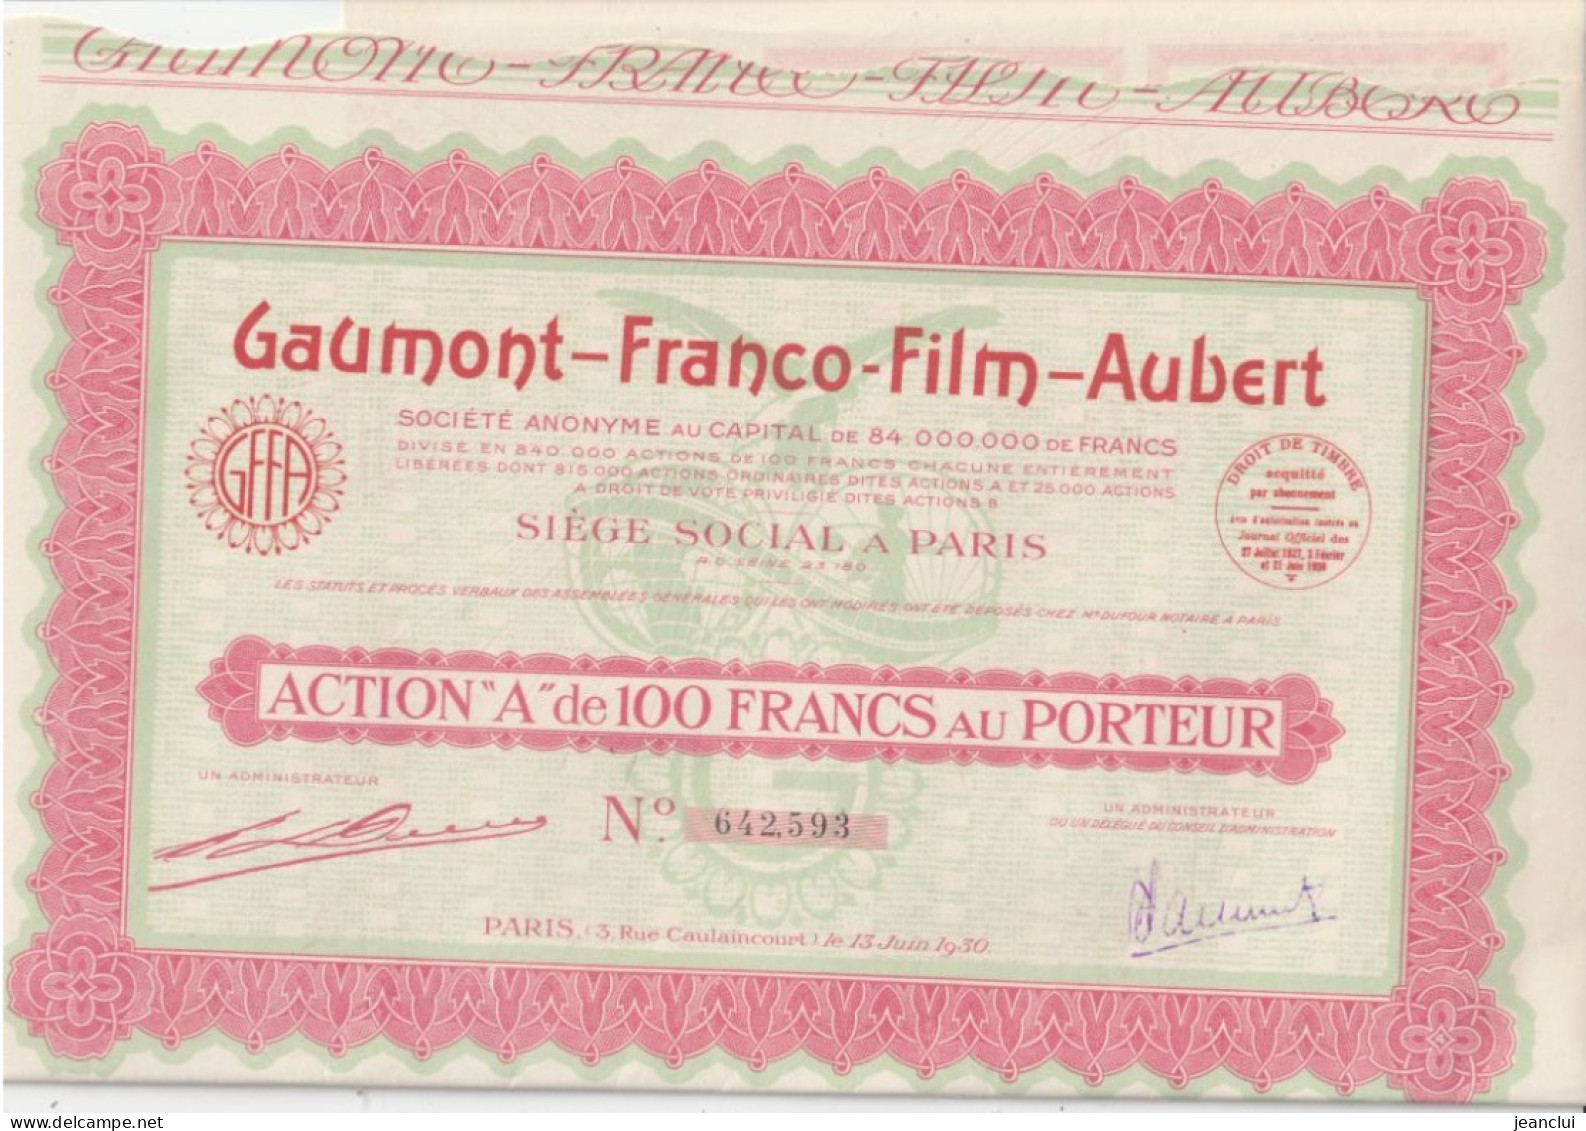 GAUMONT - FRANCO - FILM - AUBERT  . ACTION " A " De 100 FRANCS AU PORTEUR  N° 642.593 - Cine & Teatro